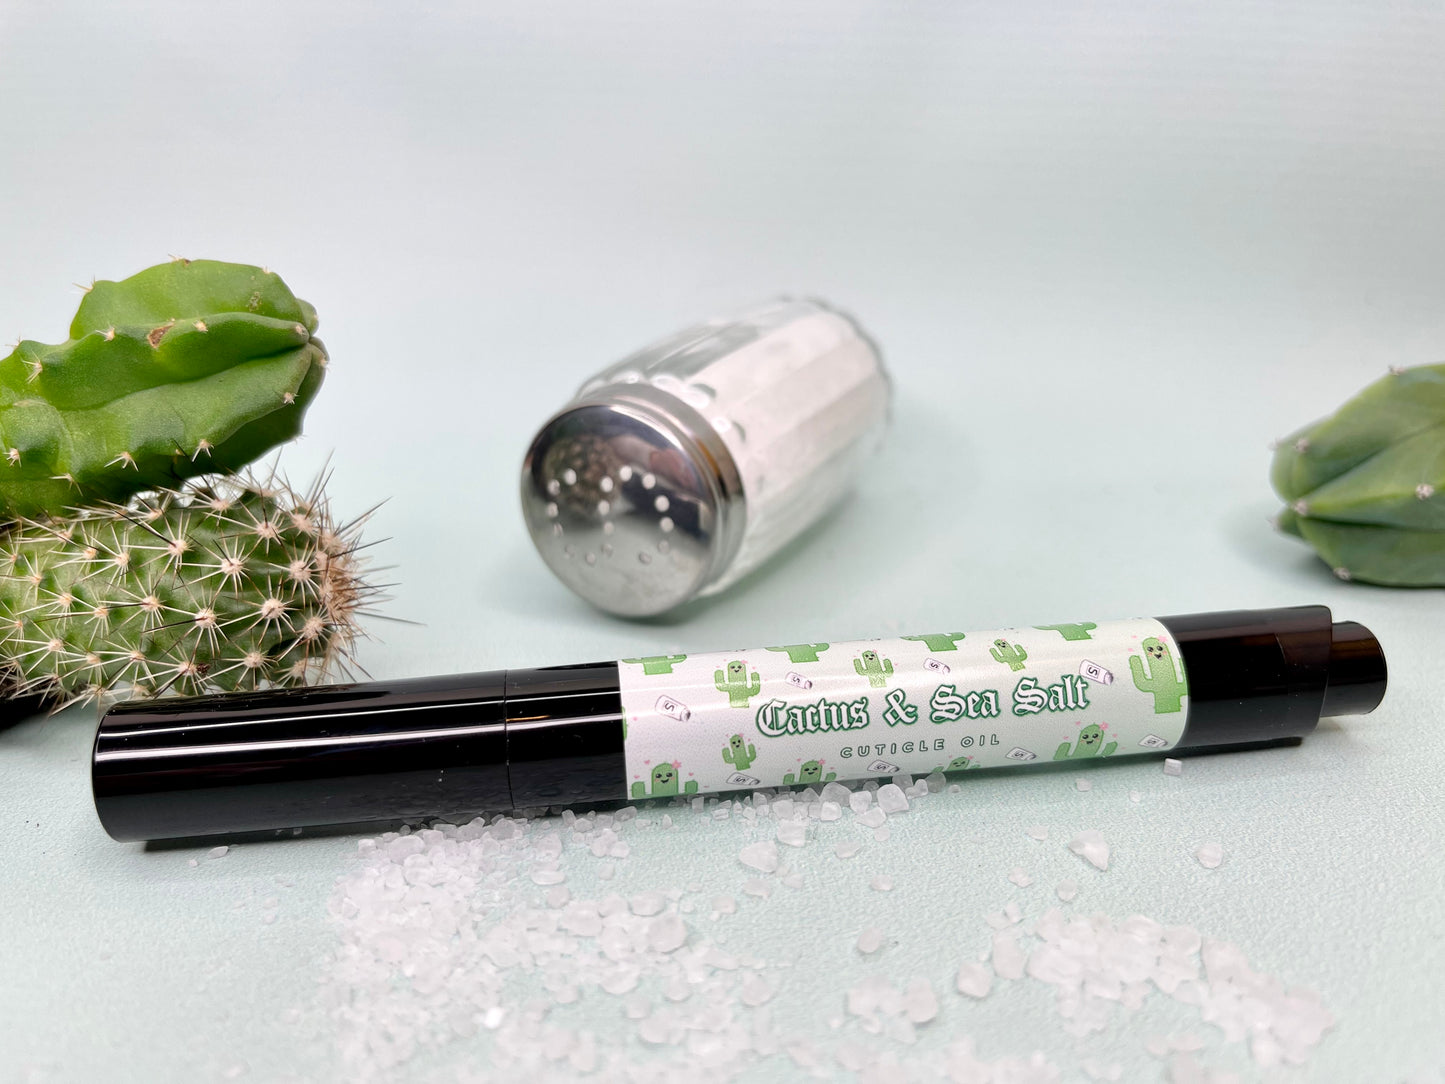 Cactus & Sea Salt Cuticle Oil Pen